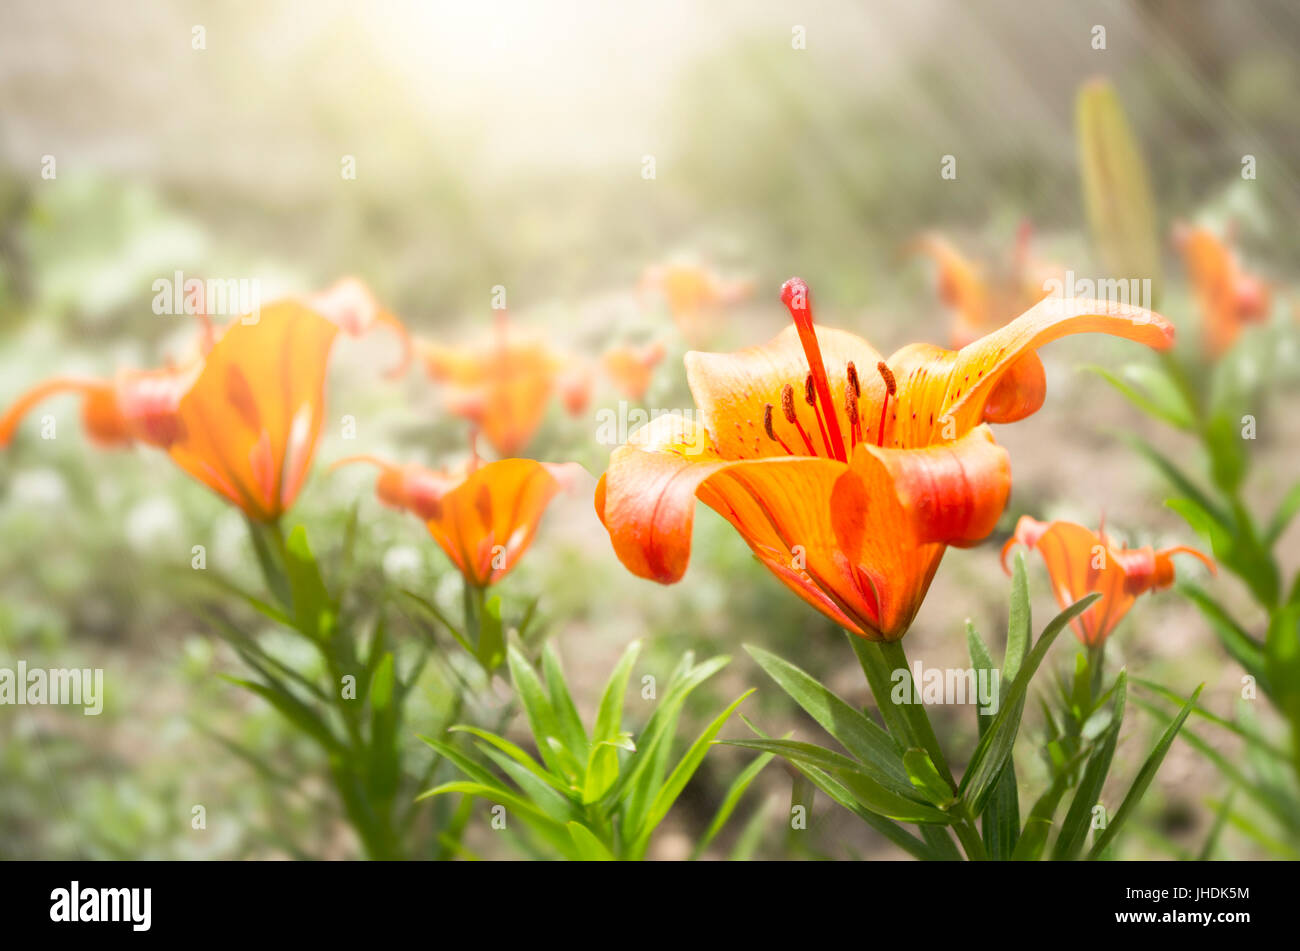 Tiger Lily fleur en pleine floraison orange-feu sur une étamine avec la fin de l'été, matin. Lilium lancifolium est l'un des plusieurs espèces de lys orange flo Banque D'Images